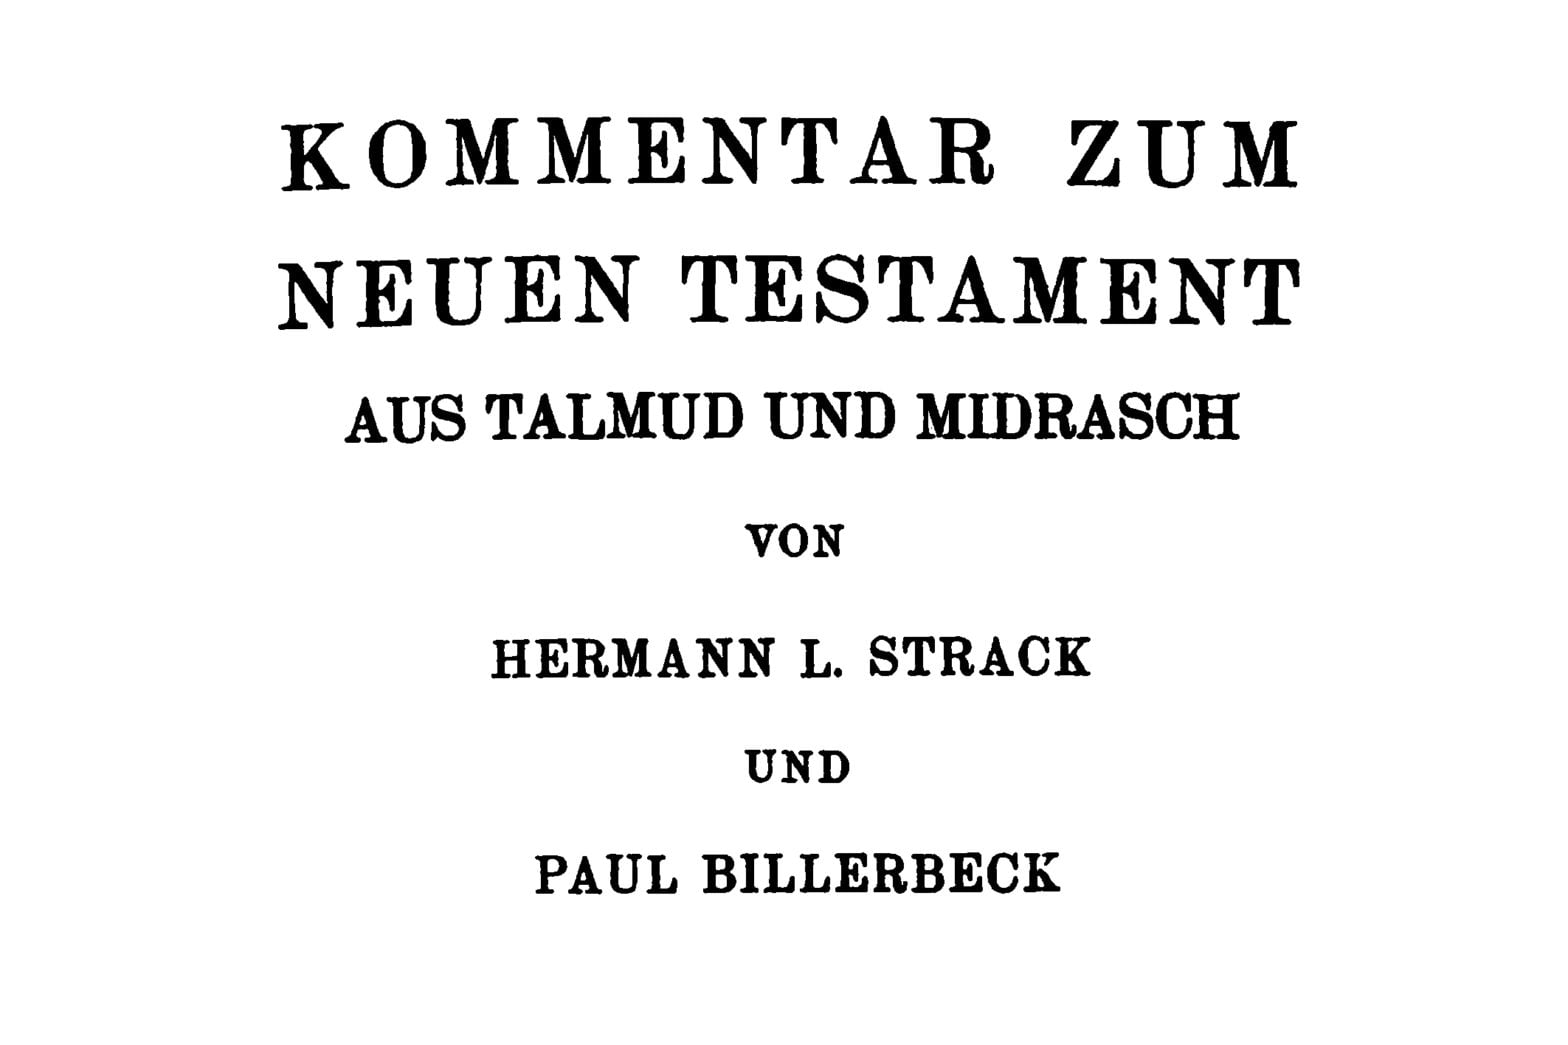 Get Strack and Billerbeck via Internet Archive